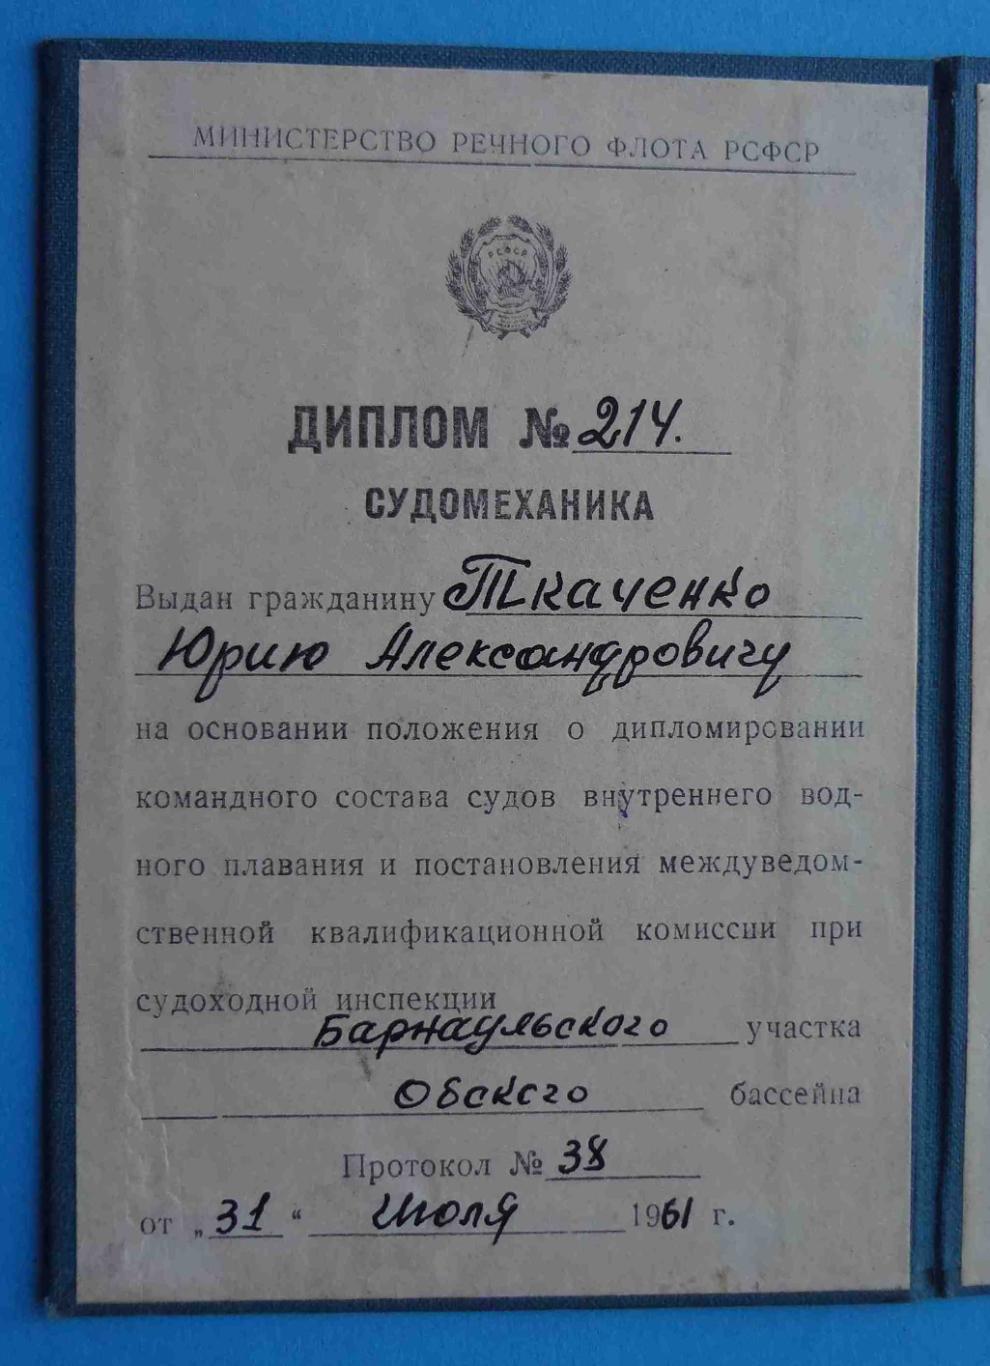 Диплом судомеханика 1961 МРФ РСФСР (5) 2